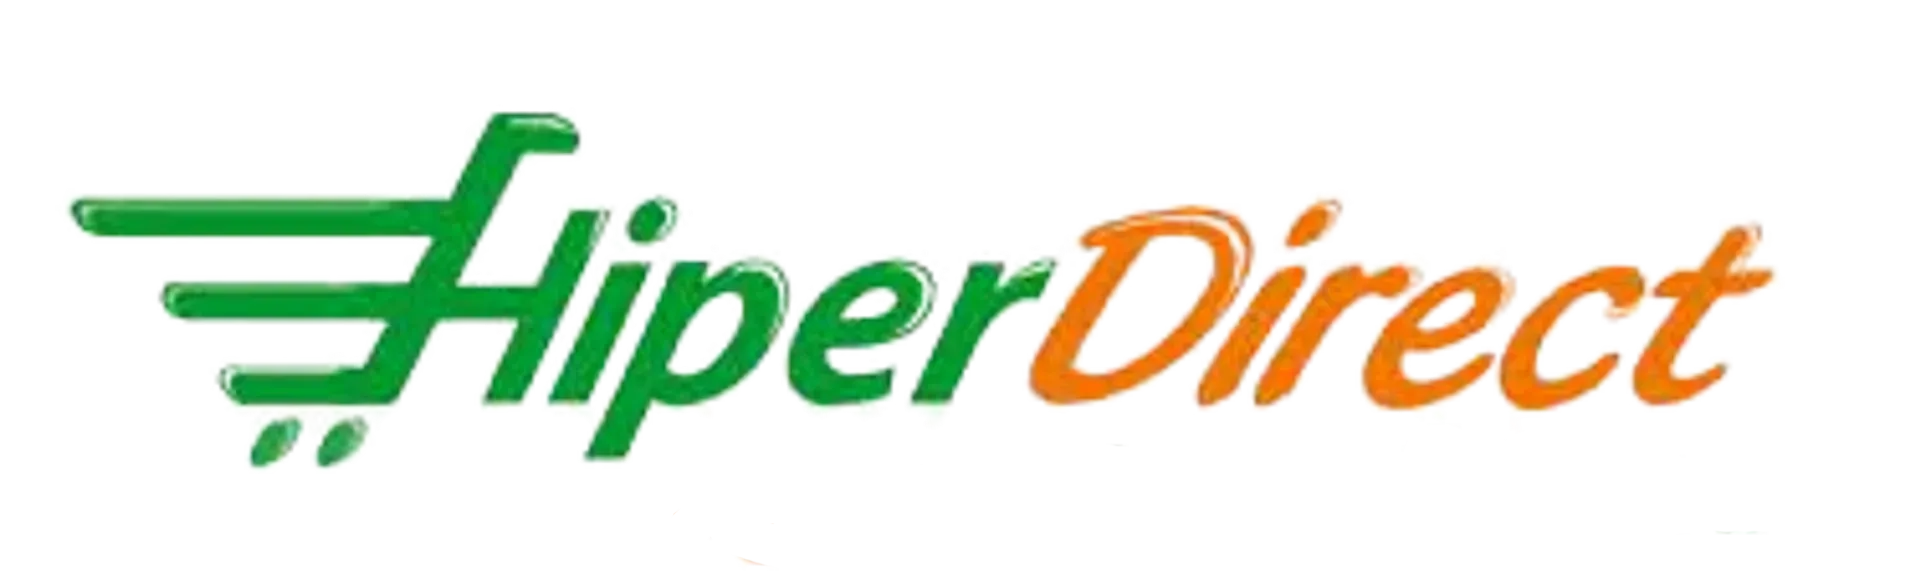 HIPER DIRECT logo de catálogo